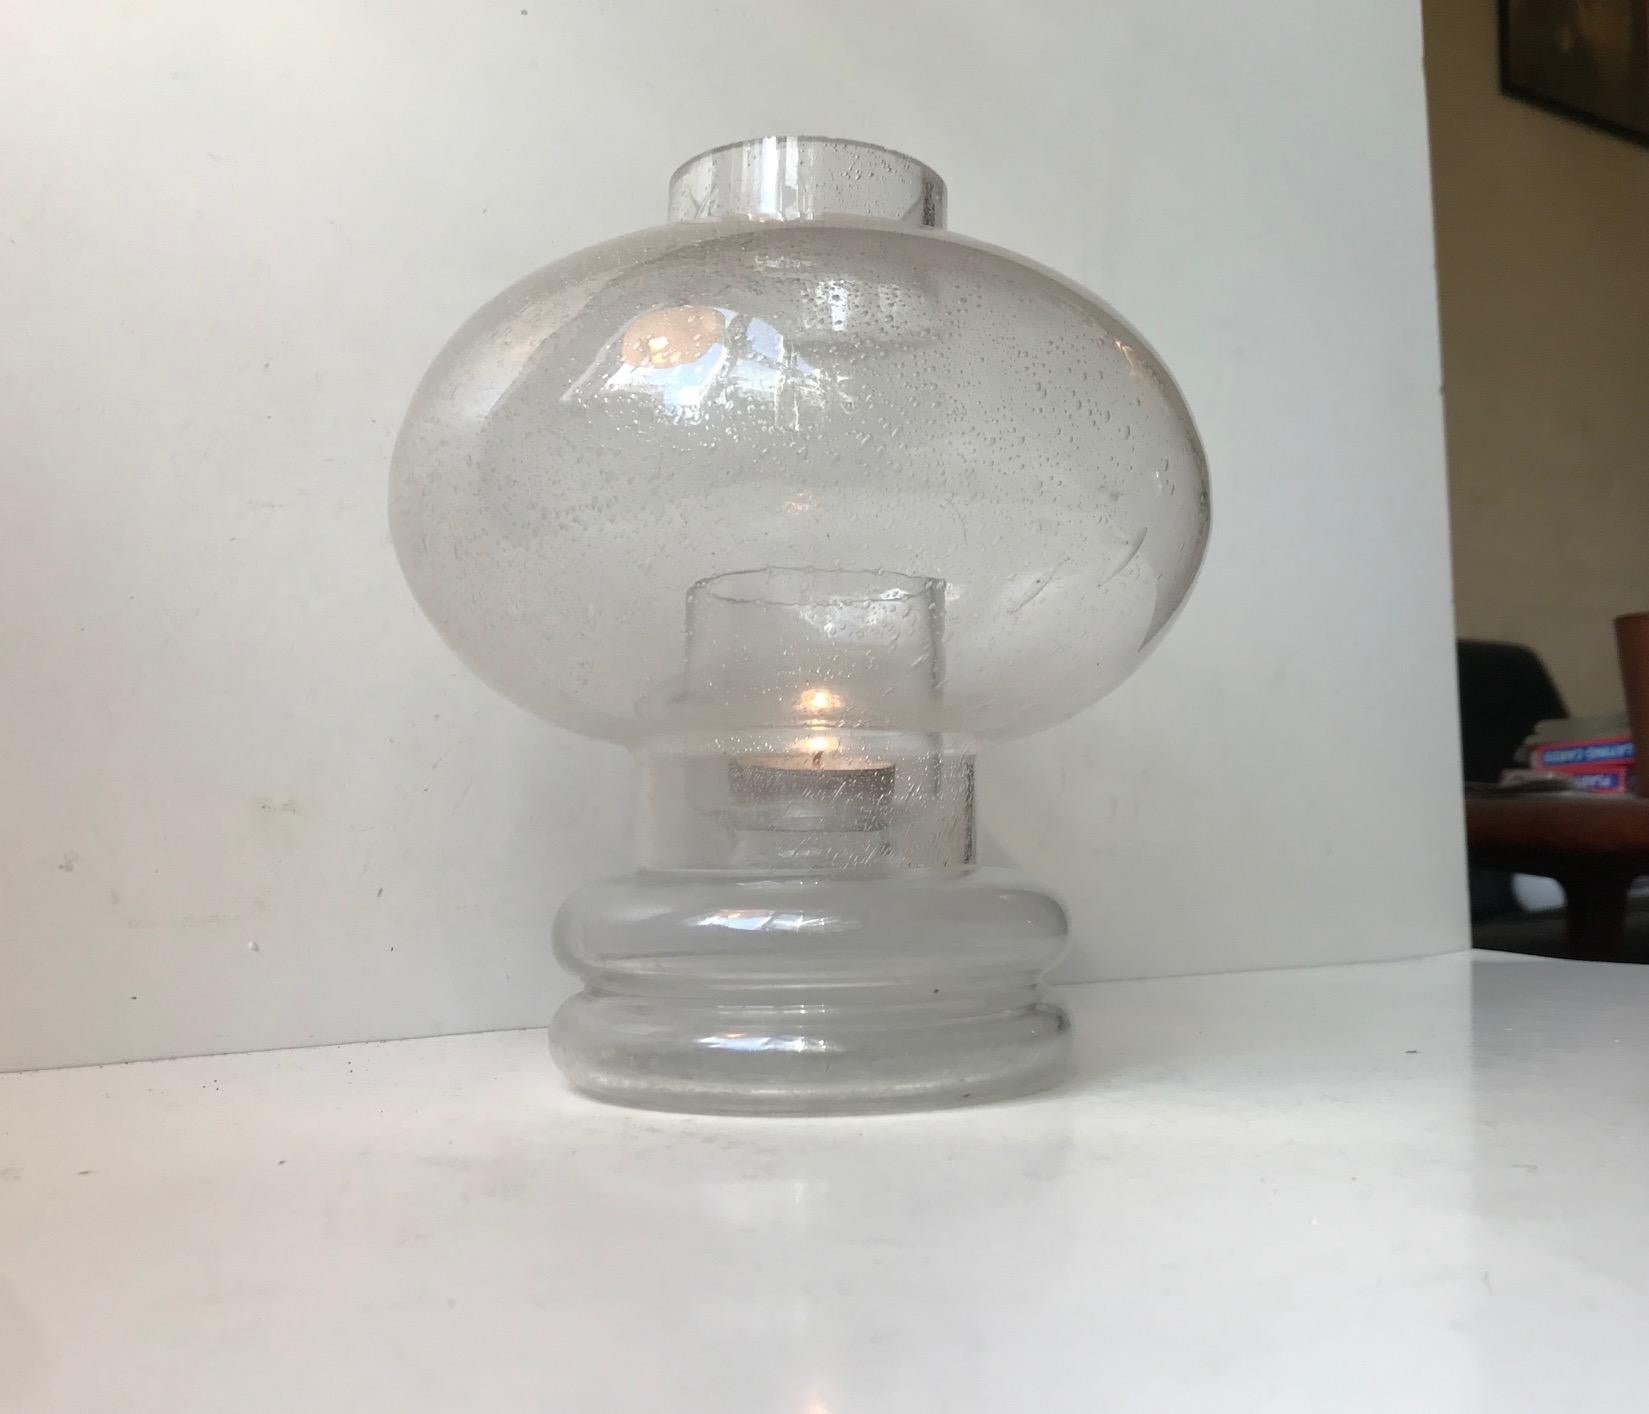 Räumlich wirkende Kerzentischlampe für Teelichter, Block- oder Kugelkerzen. Sie hat einen Sockel aus klarem mundgeblasenem Glas und einen Schirm aus klarem Blisterglas. Entworfen von Nanny Still in den späten 1960er Jahren und hergestellt von